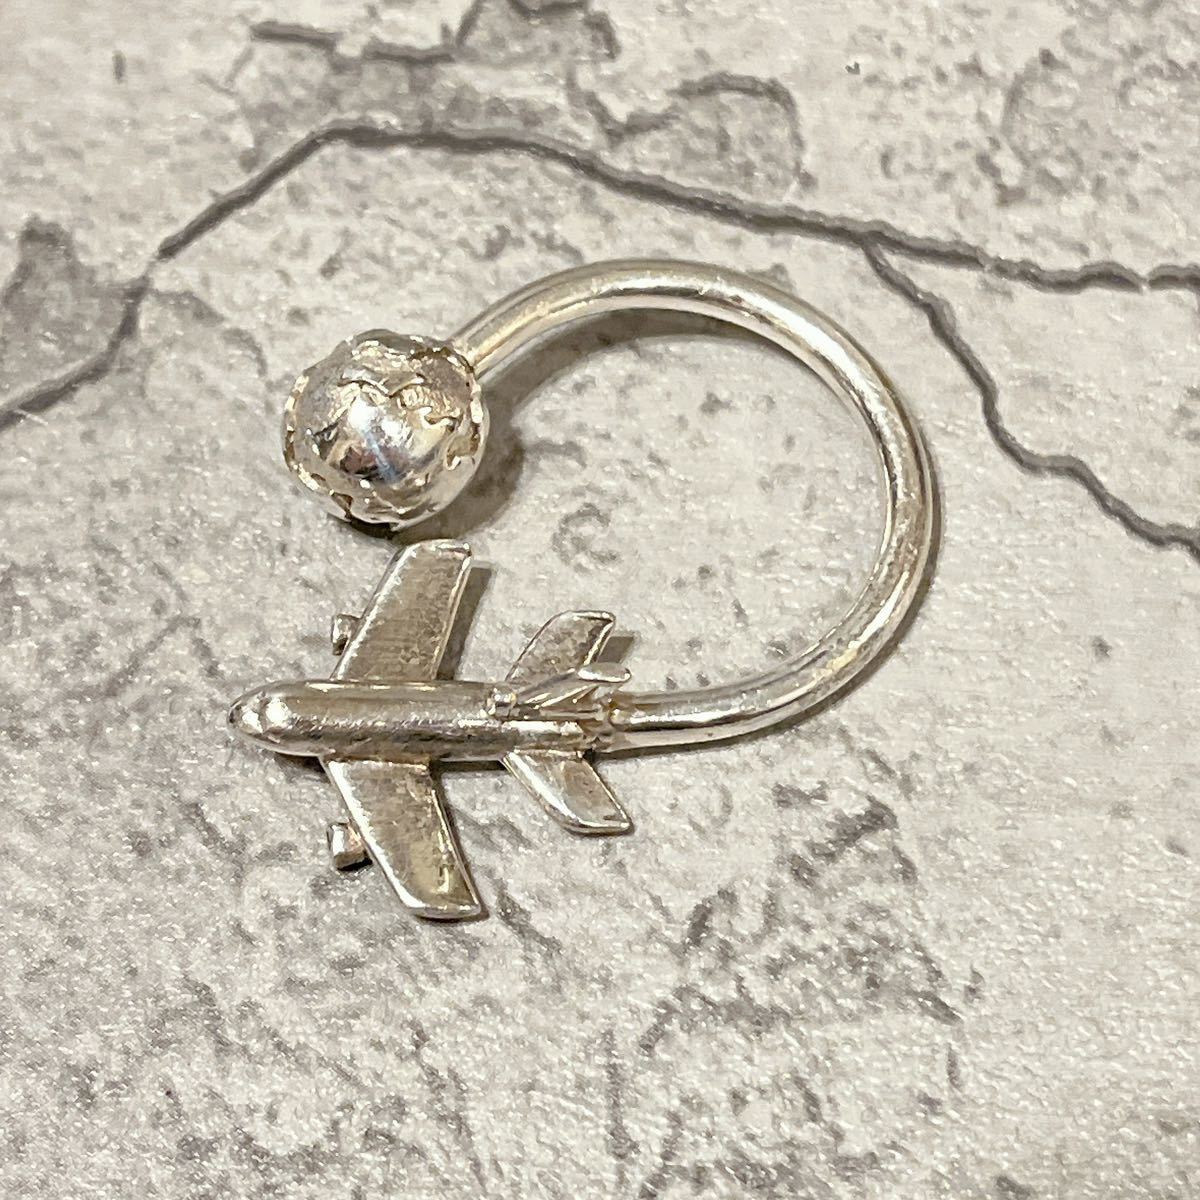  редкий прекрасный товар Tiffany путешествие узор самолет земля кольцо для ключей серебряный 